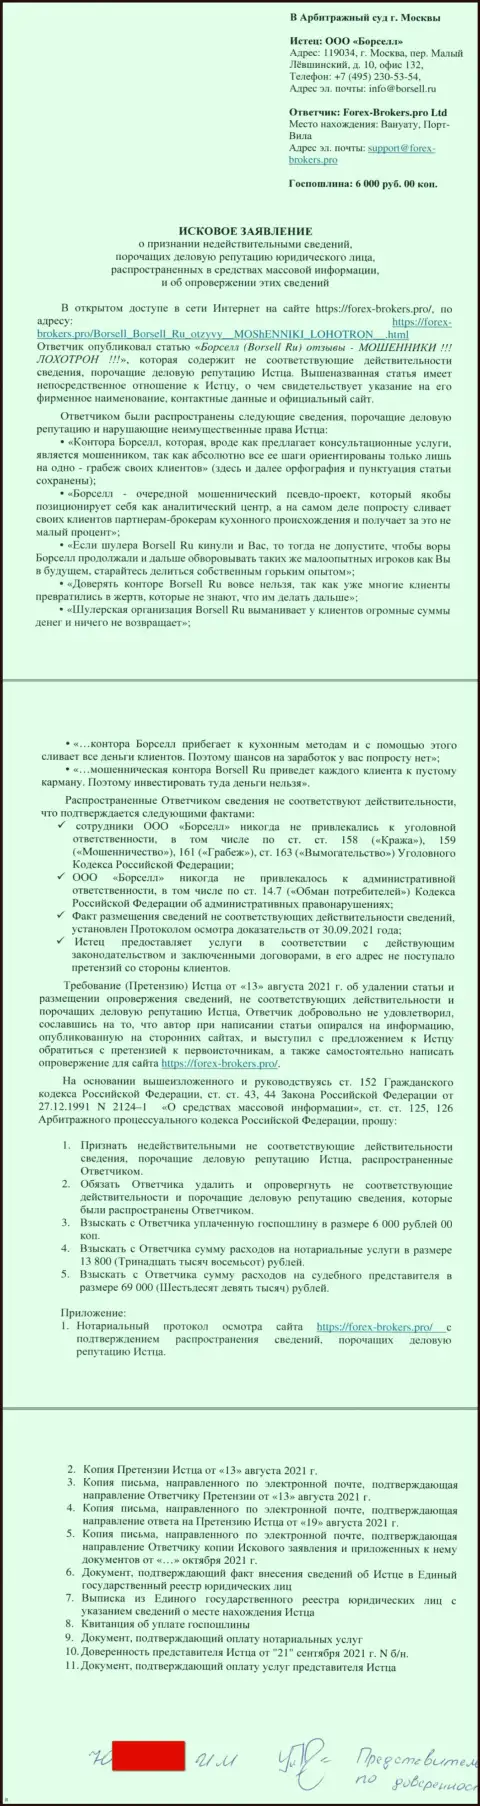 Непосредственно исковое заявление в суд махинаторов Borsell Ru